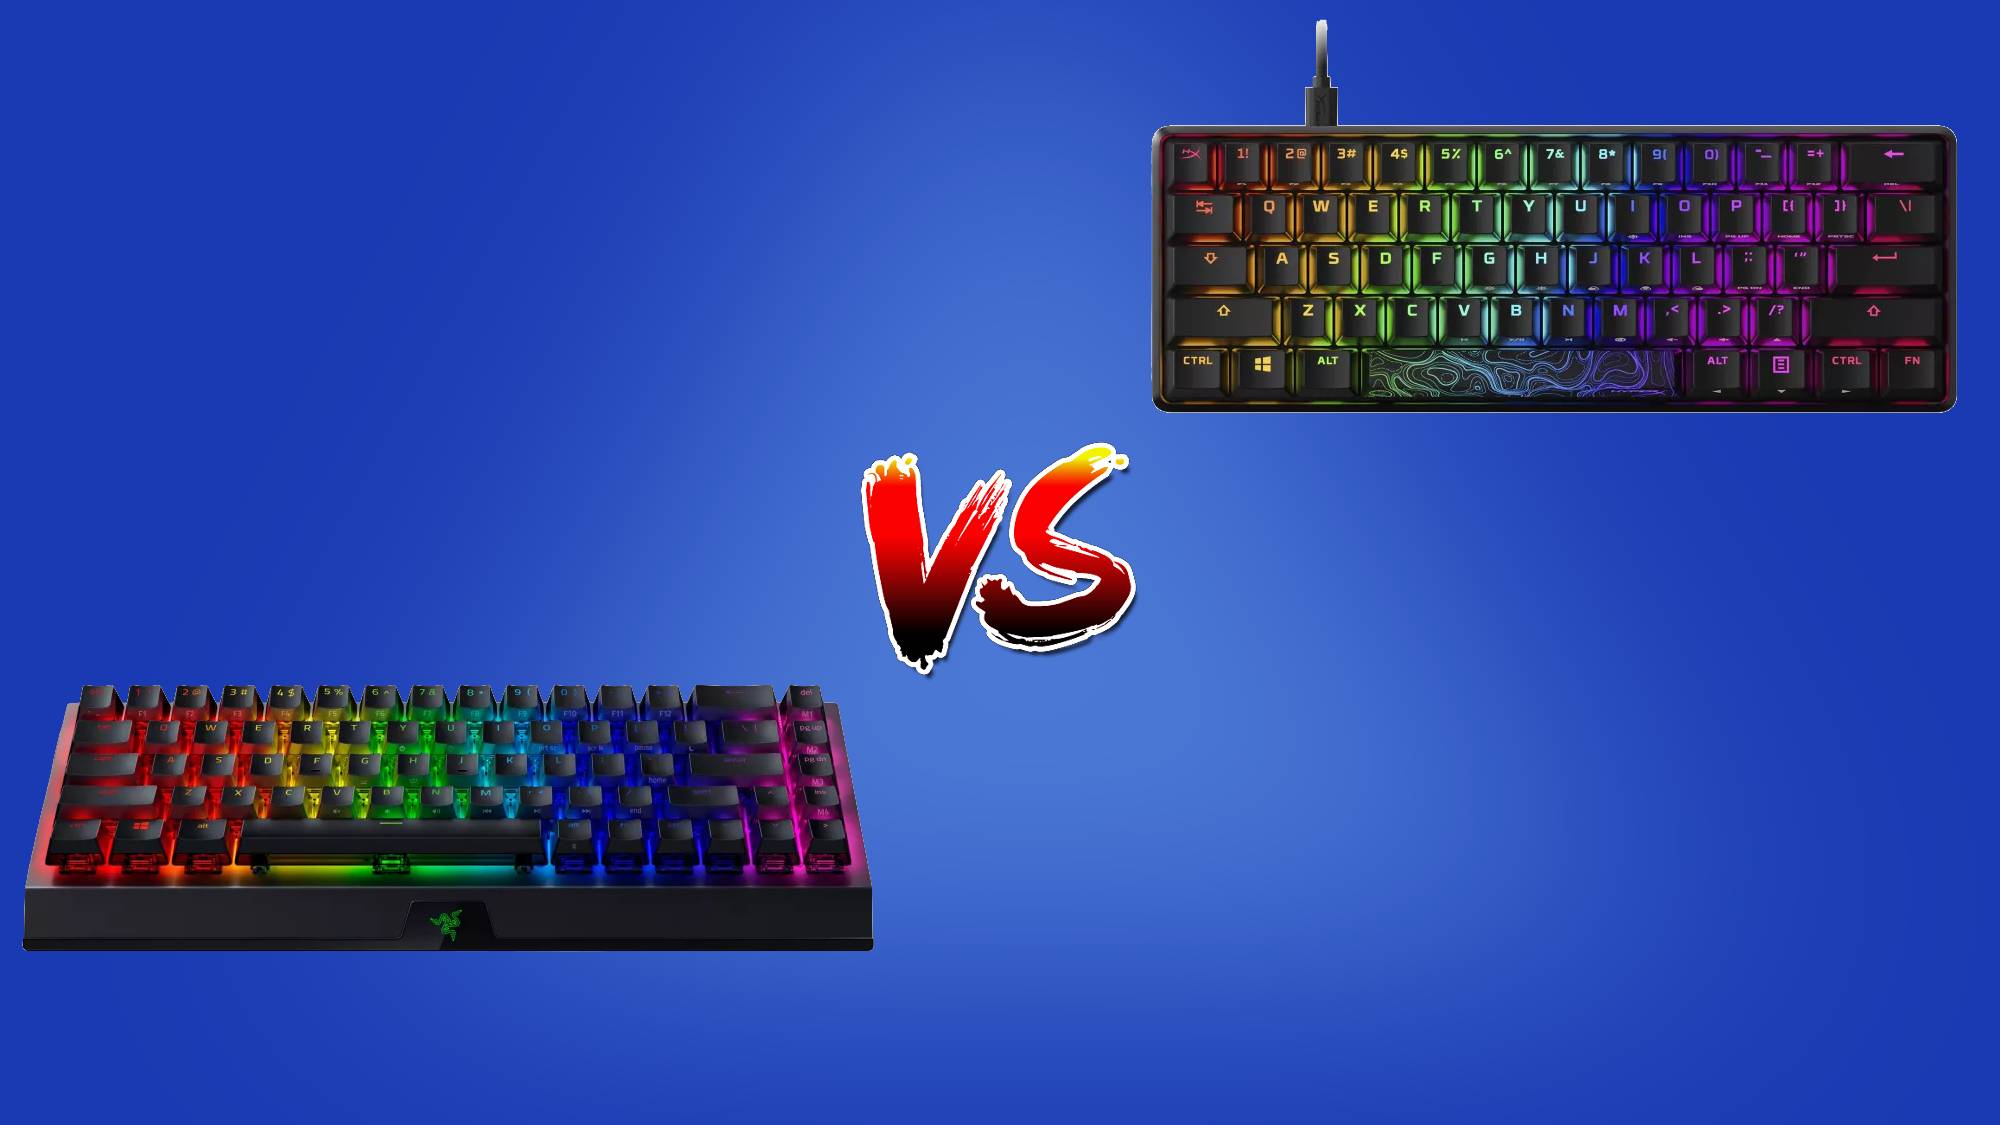 Wired vs wireless keyboard: which keyboard is best?